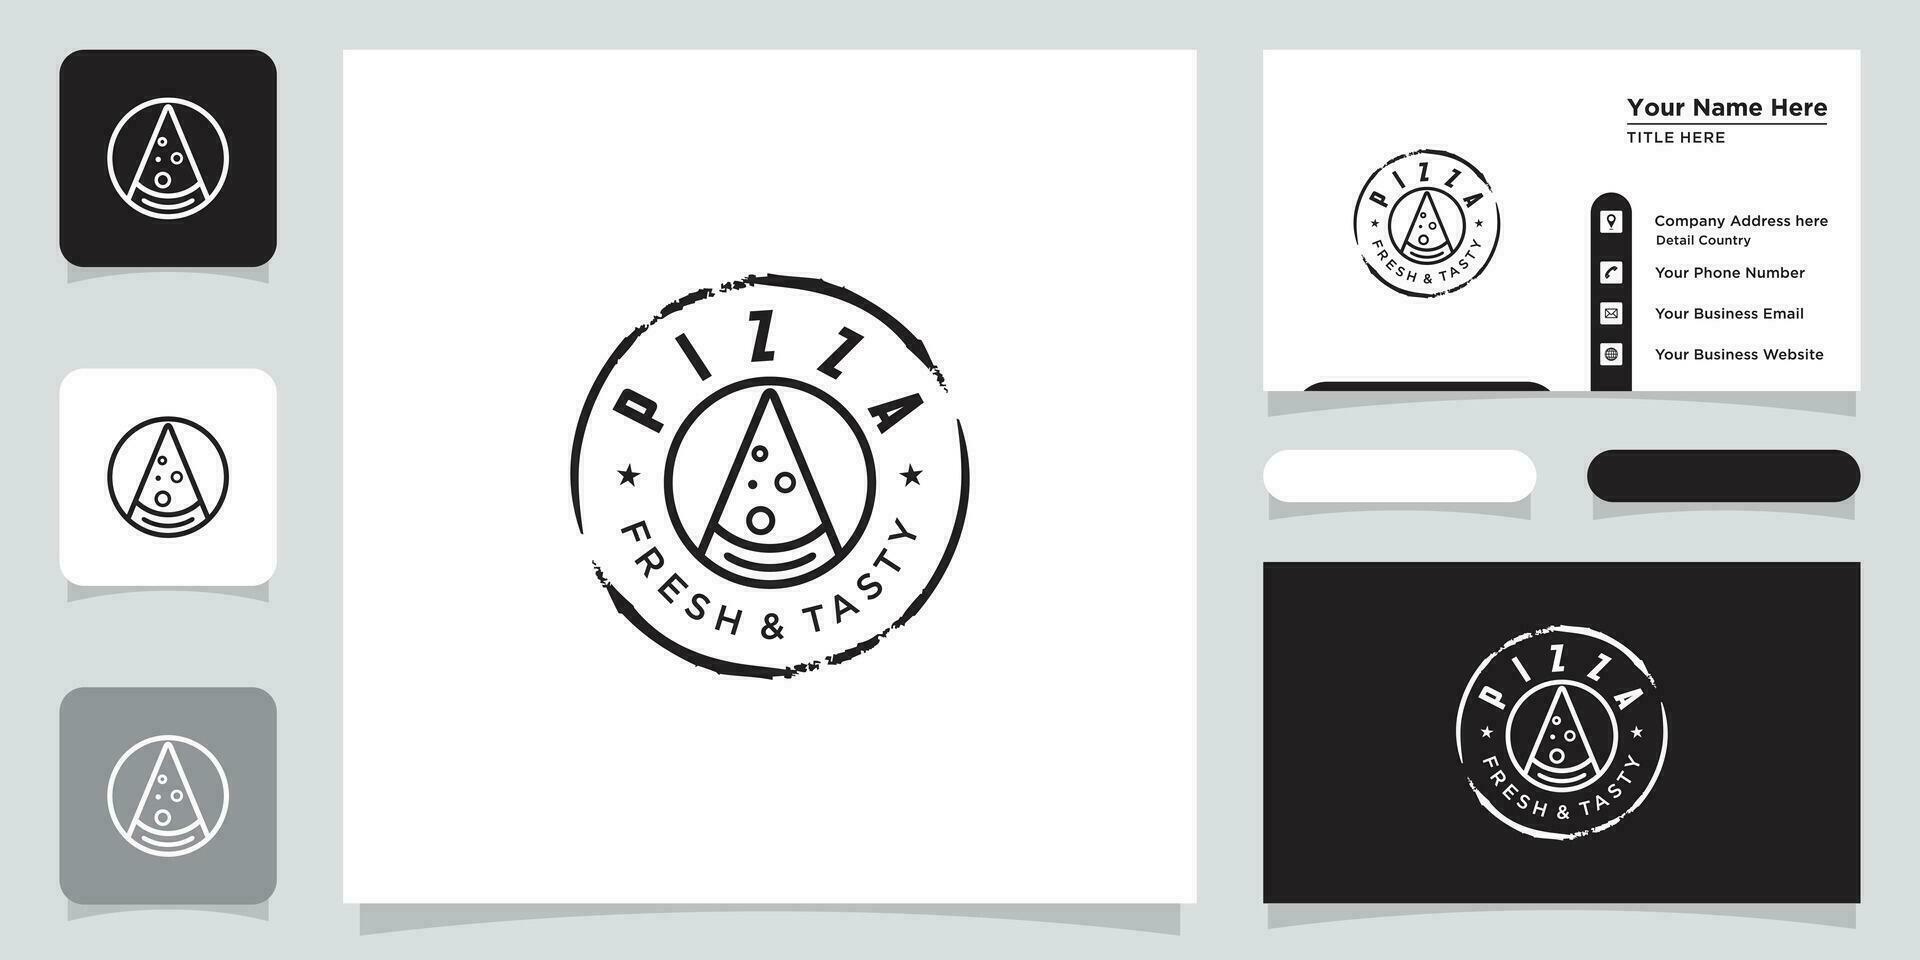 Pizza restaurante diseño logo. símbolos para comida y bebida con negocio tarjeta diseño prima vector